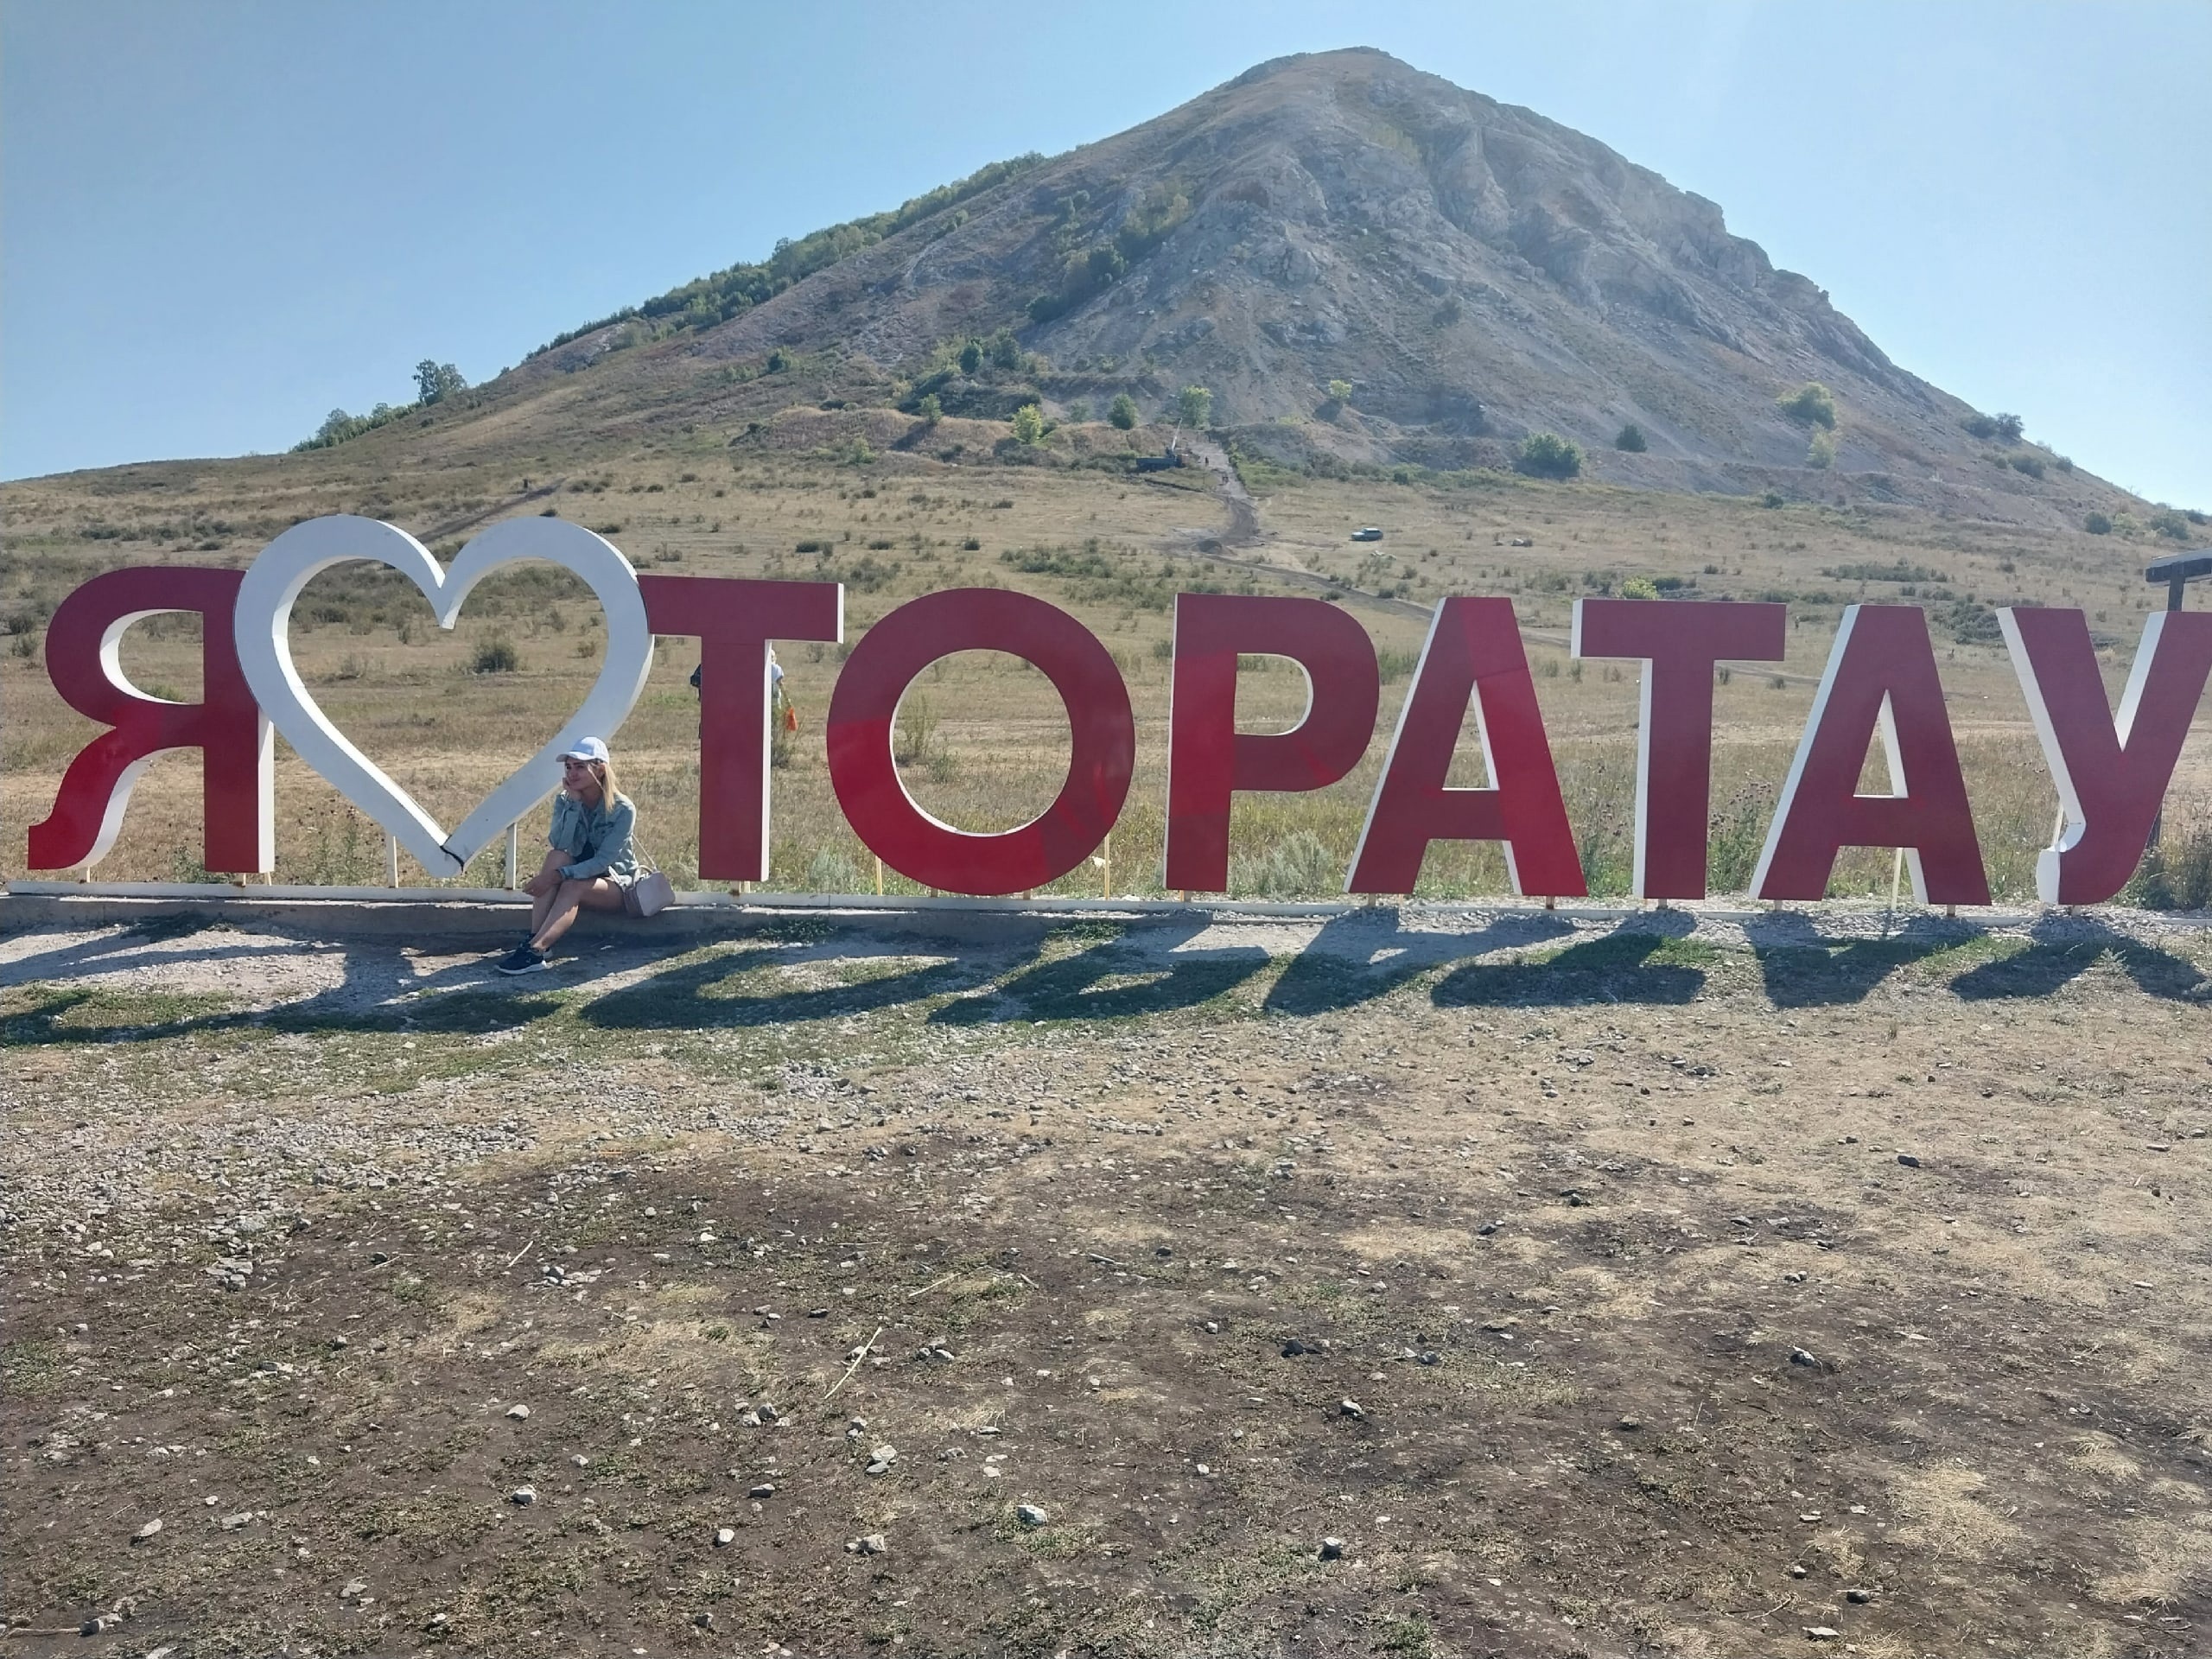 Экскурсия в геопарк "Торатау"